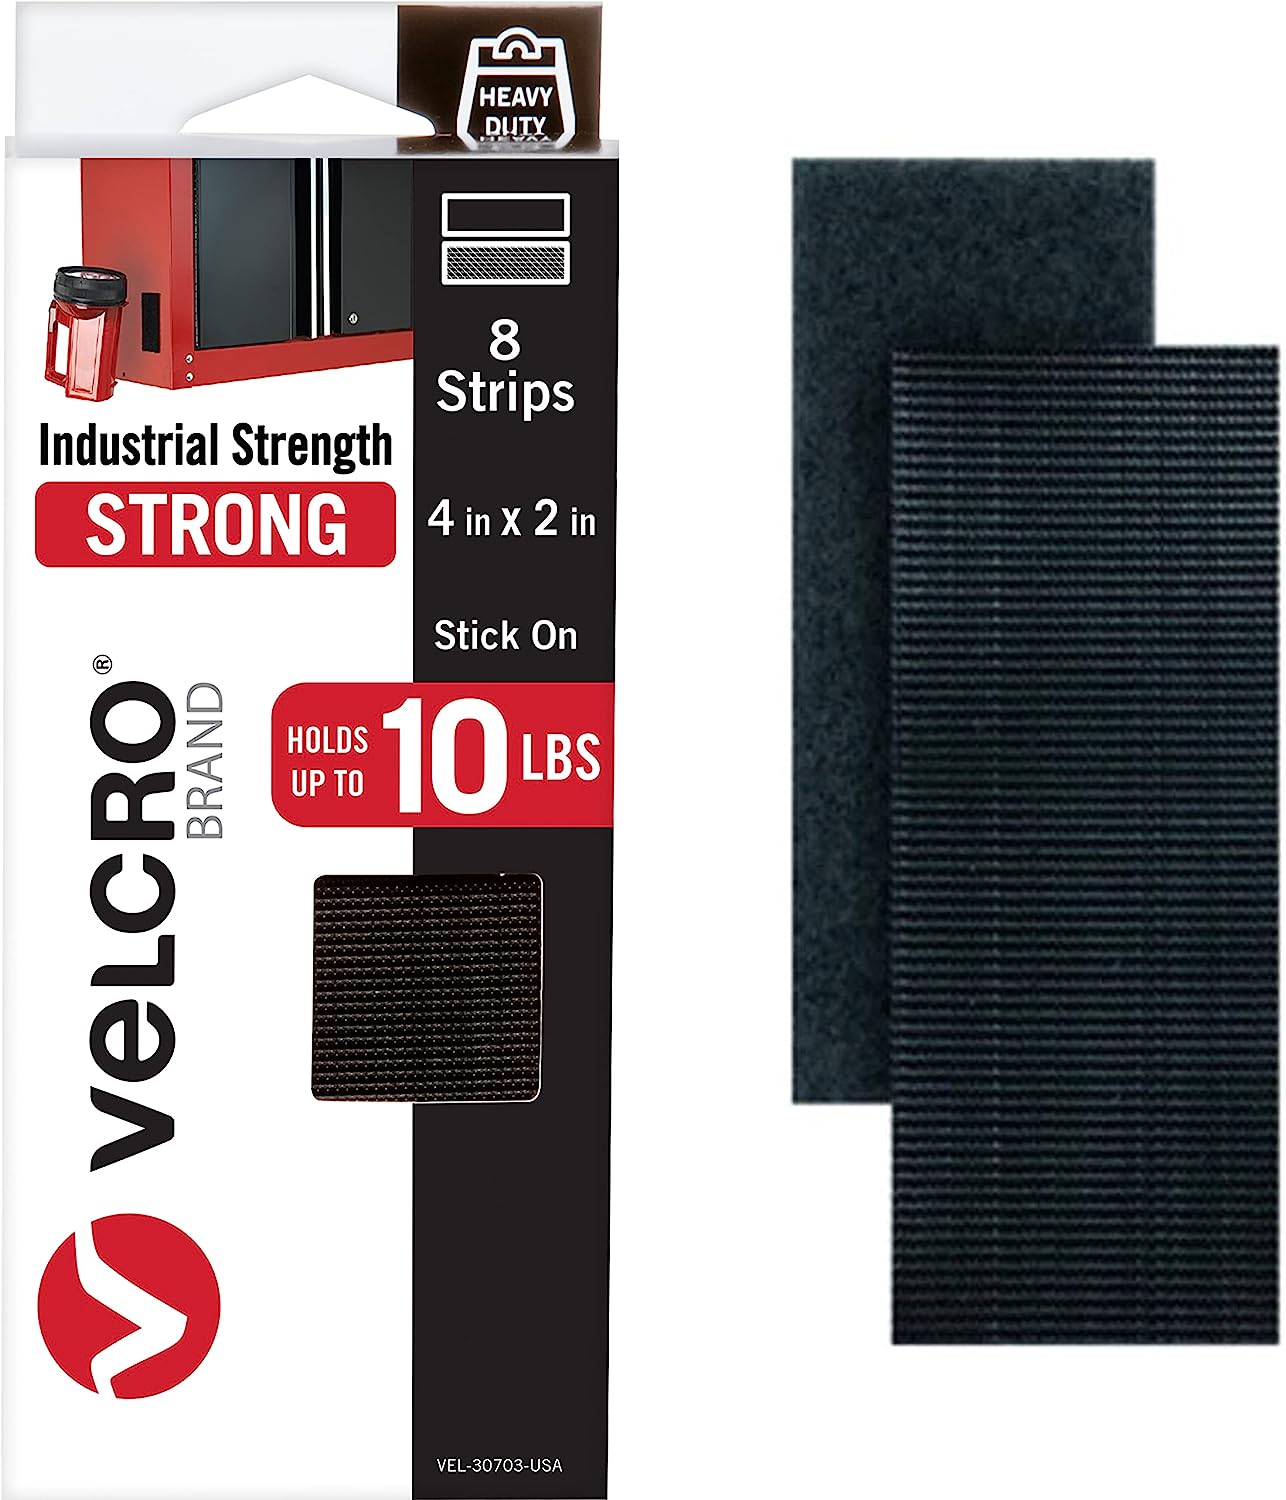 VELCRO Brand Heavy Duty Fasteners | 4x2 Inch Strips [...]